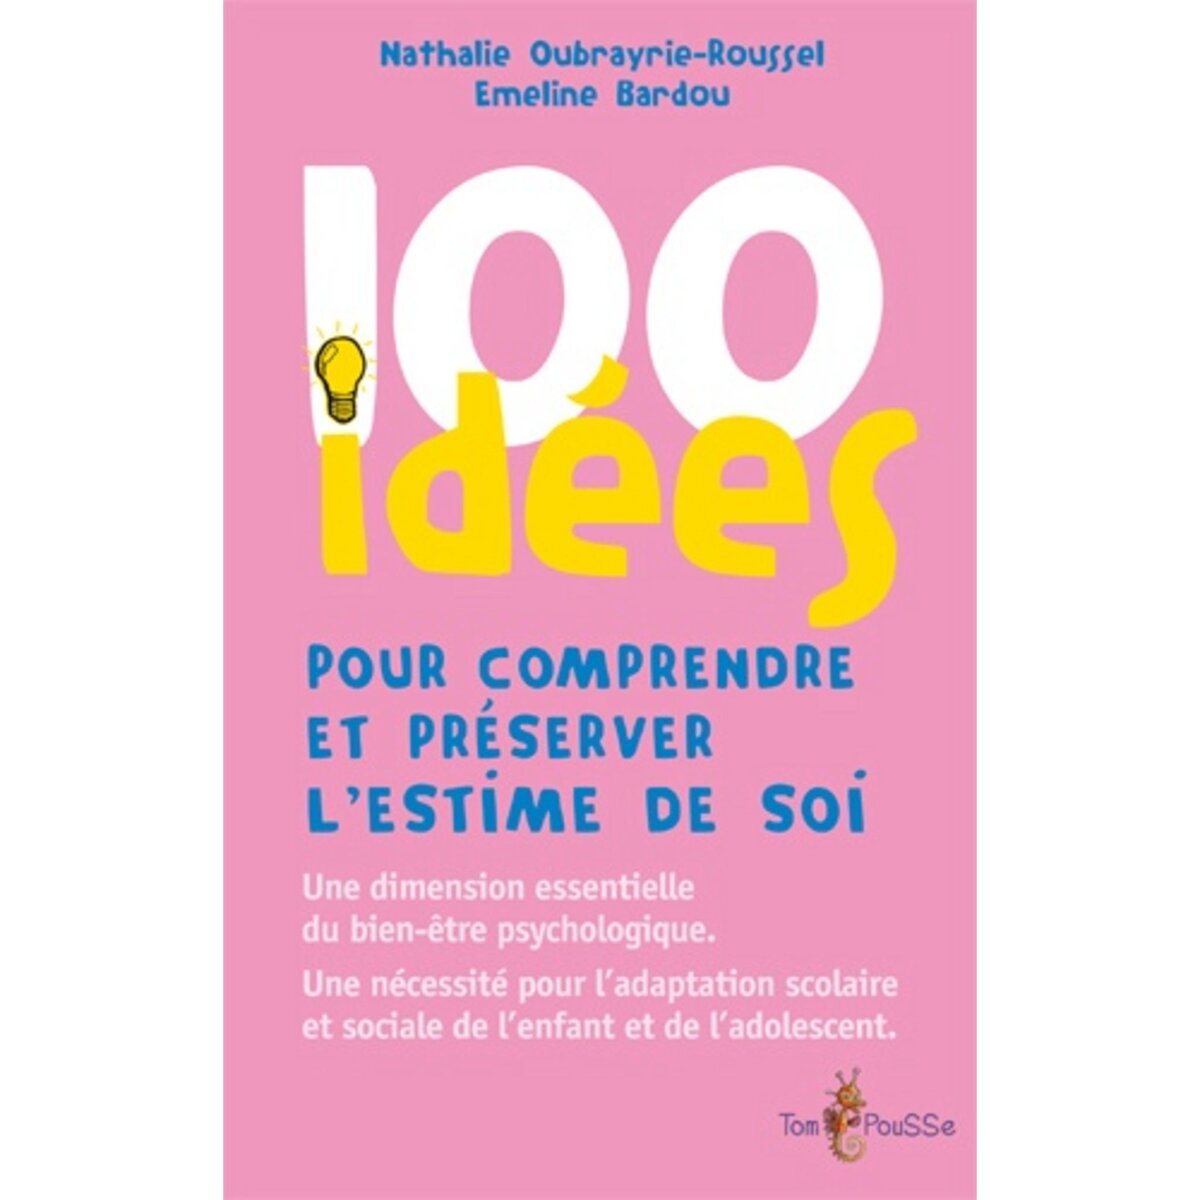  100 IDEES POUR COMPRENDRE ET PRESERVER L'ESTIME DE SOI, Oubrayrie-Roussel Nathalie